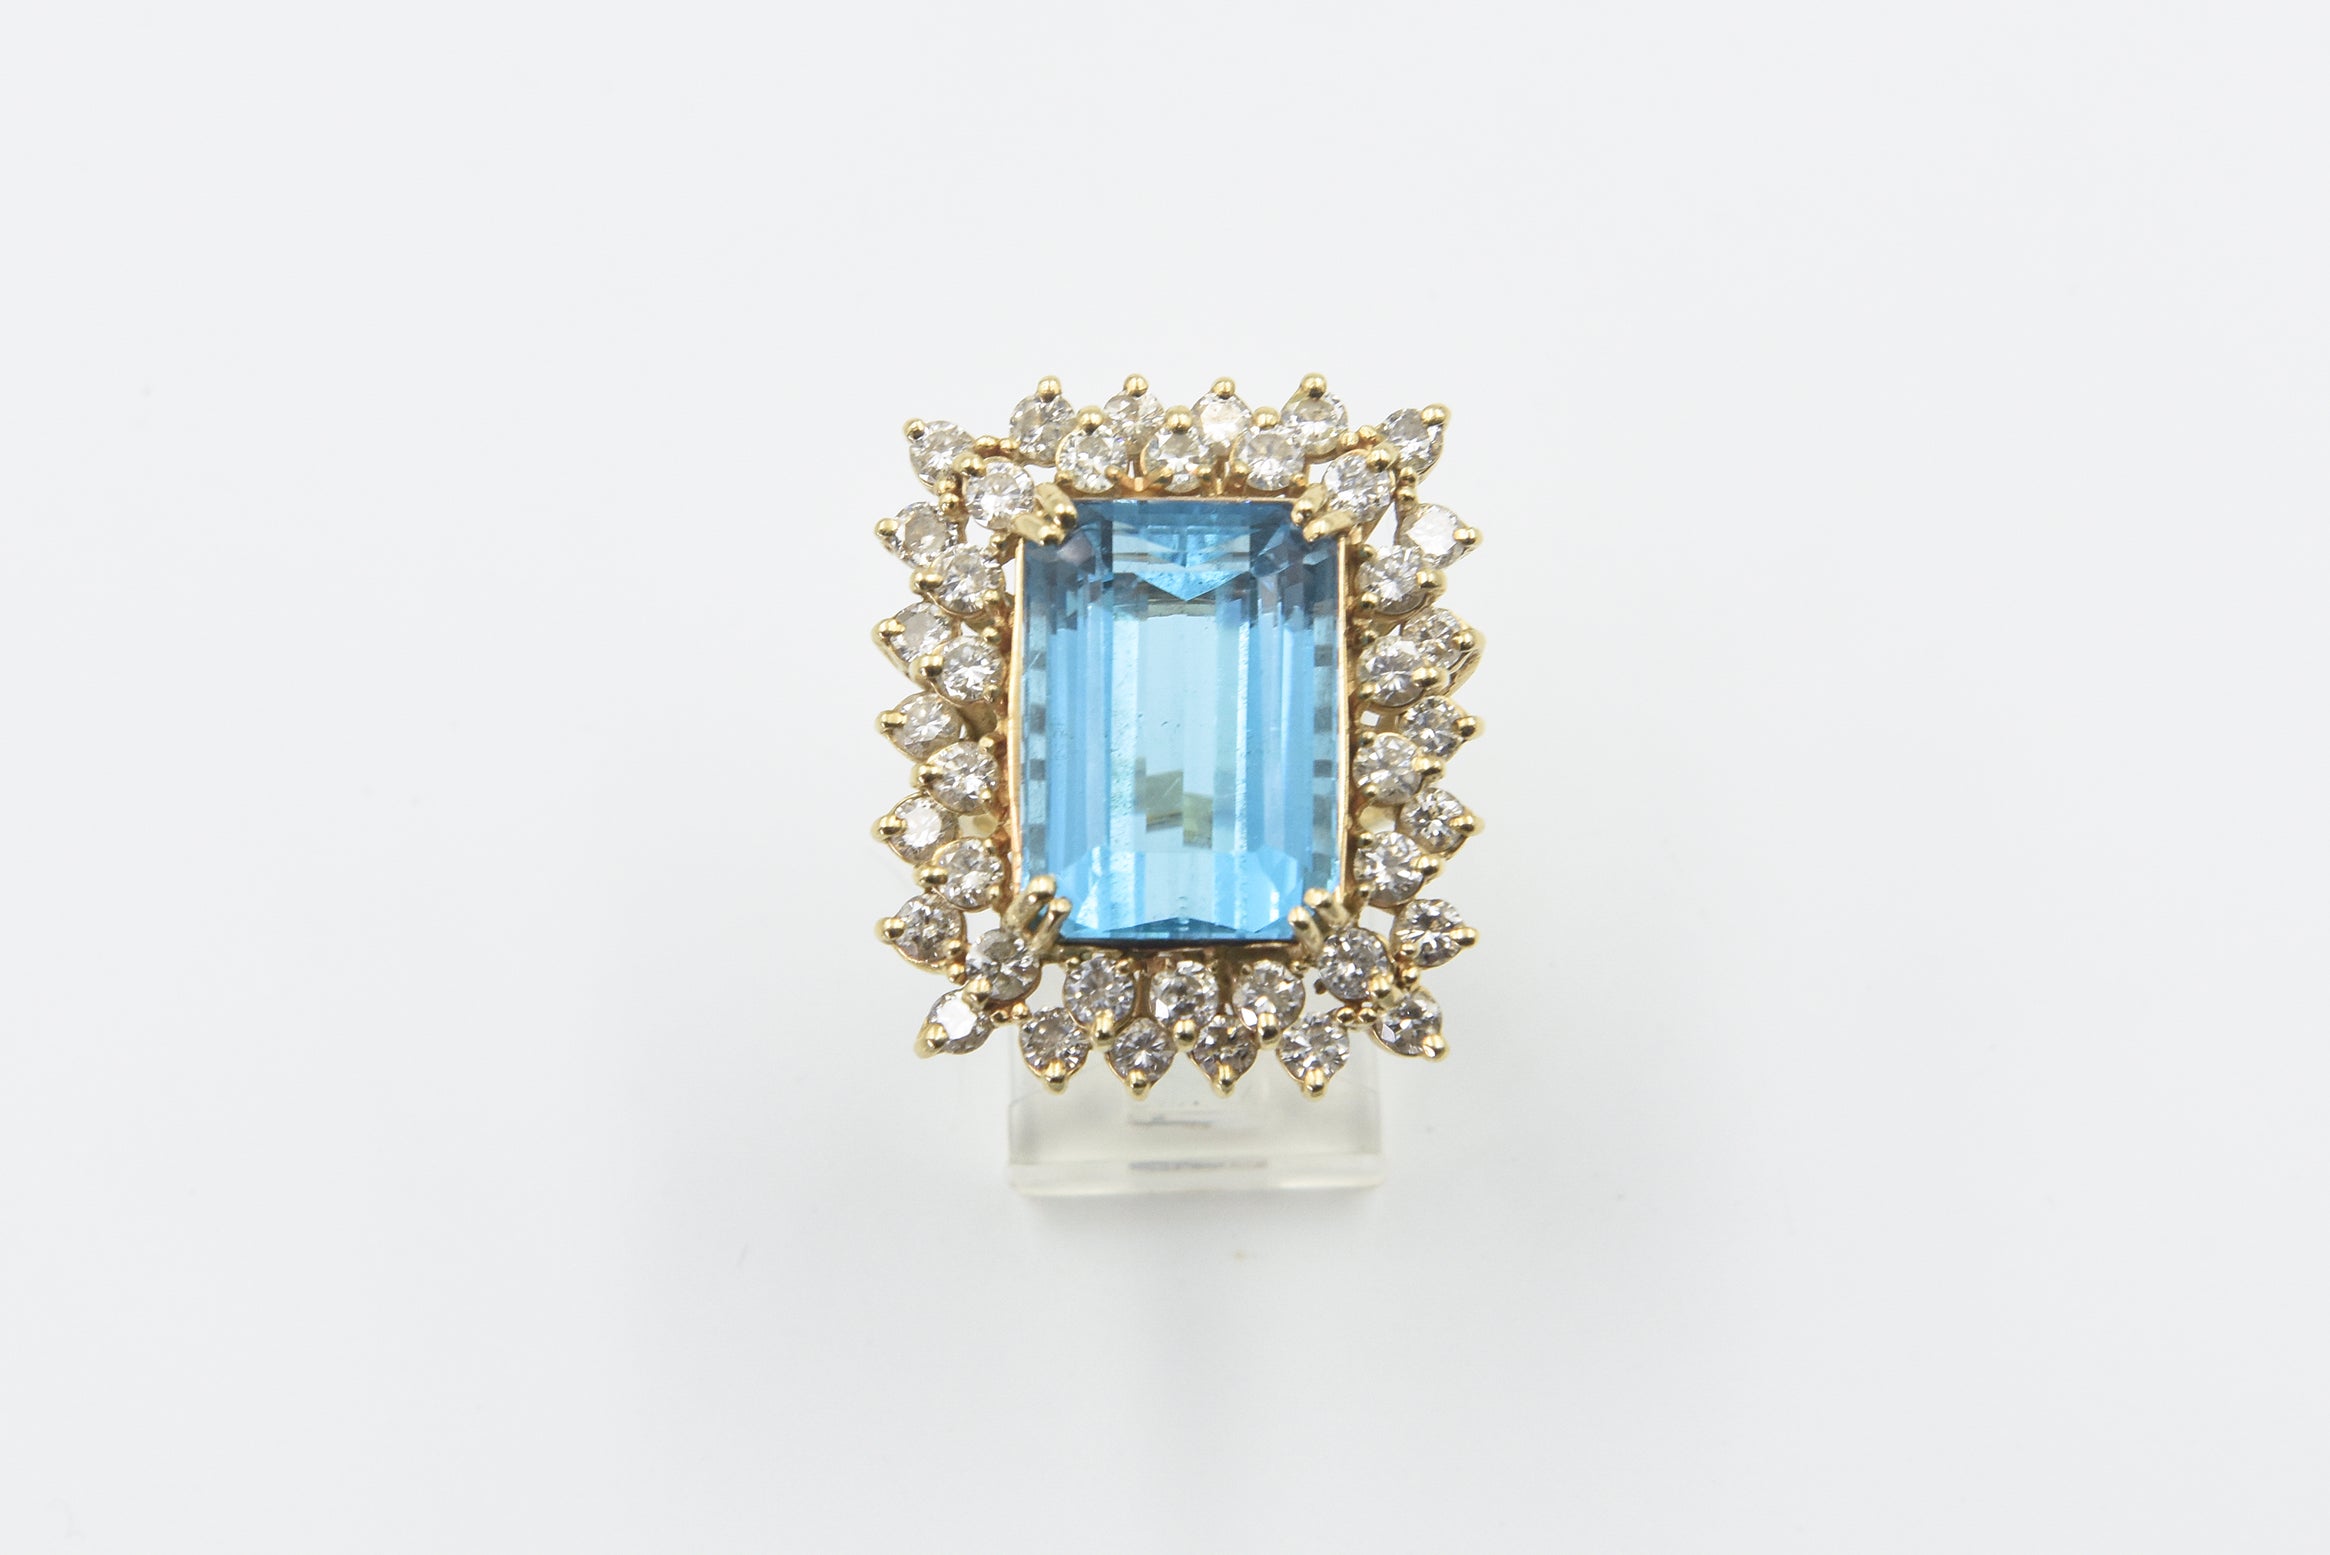 Wunderschöner Blautopas im Smaragdschliff in einer zweistufigen Diamantfassung.  Der Blautopas wiegt etwa 18 Karat.  Die Fassung hat etwa 3,36 Karat in Diamanten in einer 14 Karat Gelbgoldfassung.  Die Ringgröße beträgt 7,25 US.  